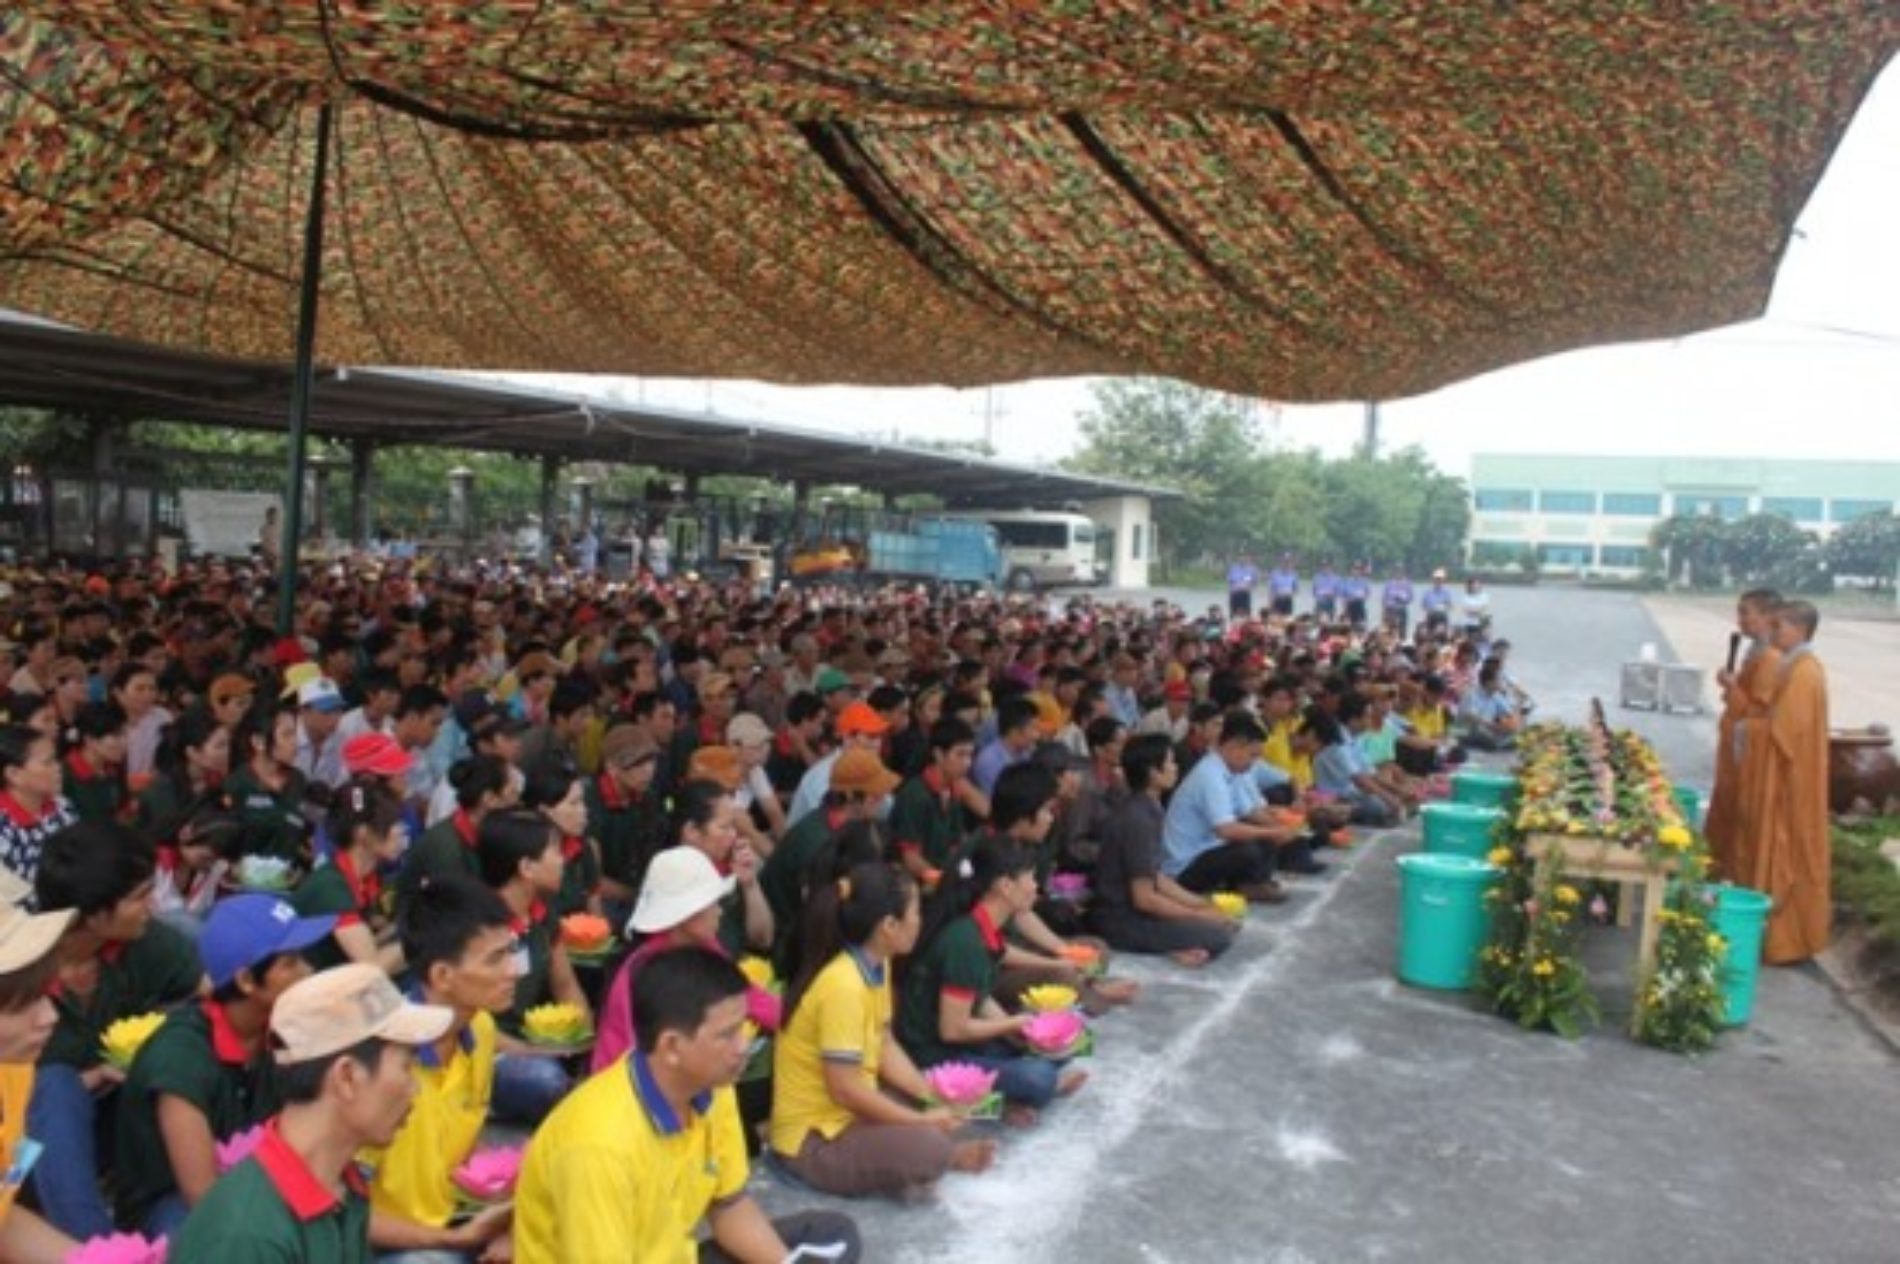 Khai Lễ Tắm Phật cho hơn 1,000 công nhân tại Cty Tiến Triển, Bình Dương